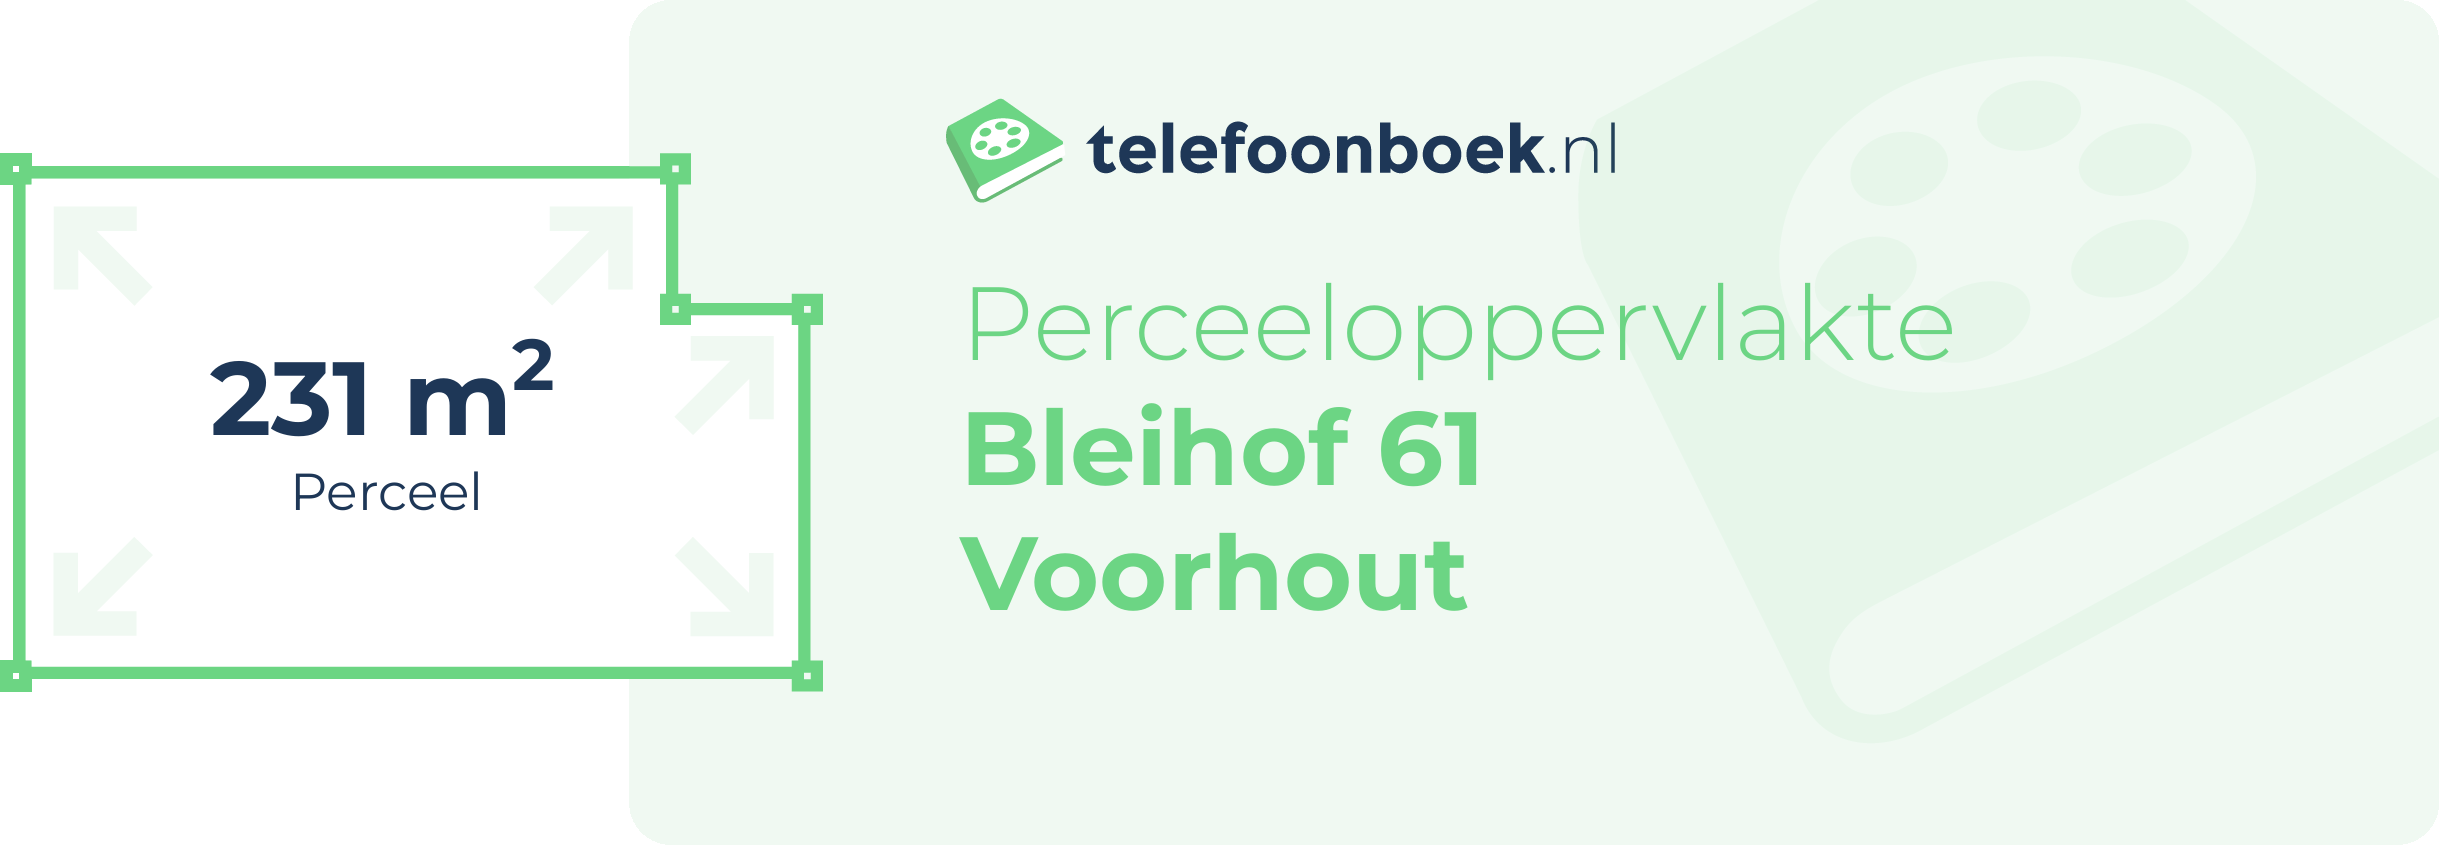 Perceeloppervlakte Bleihof 61 Voorhout